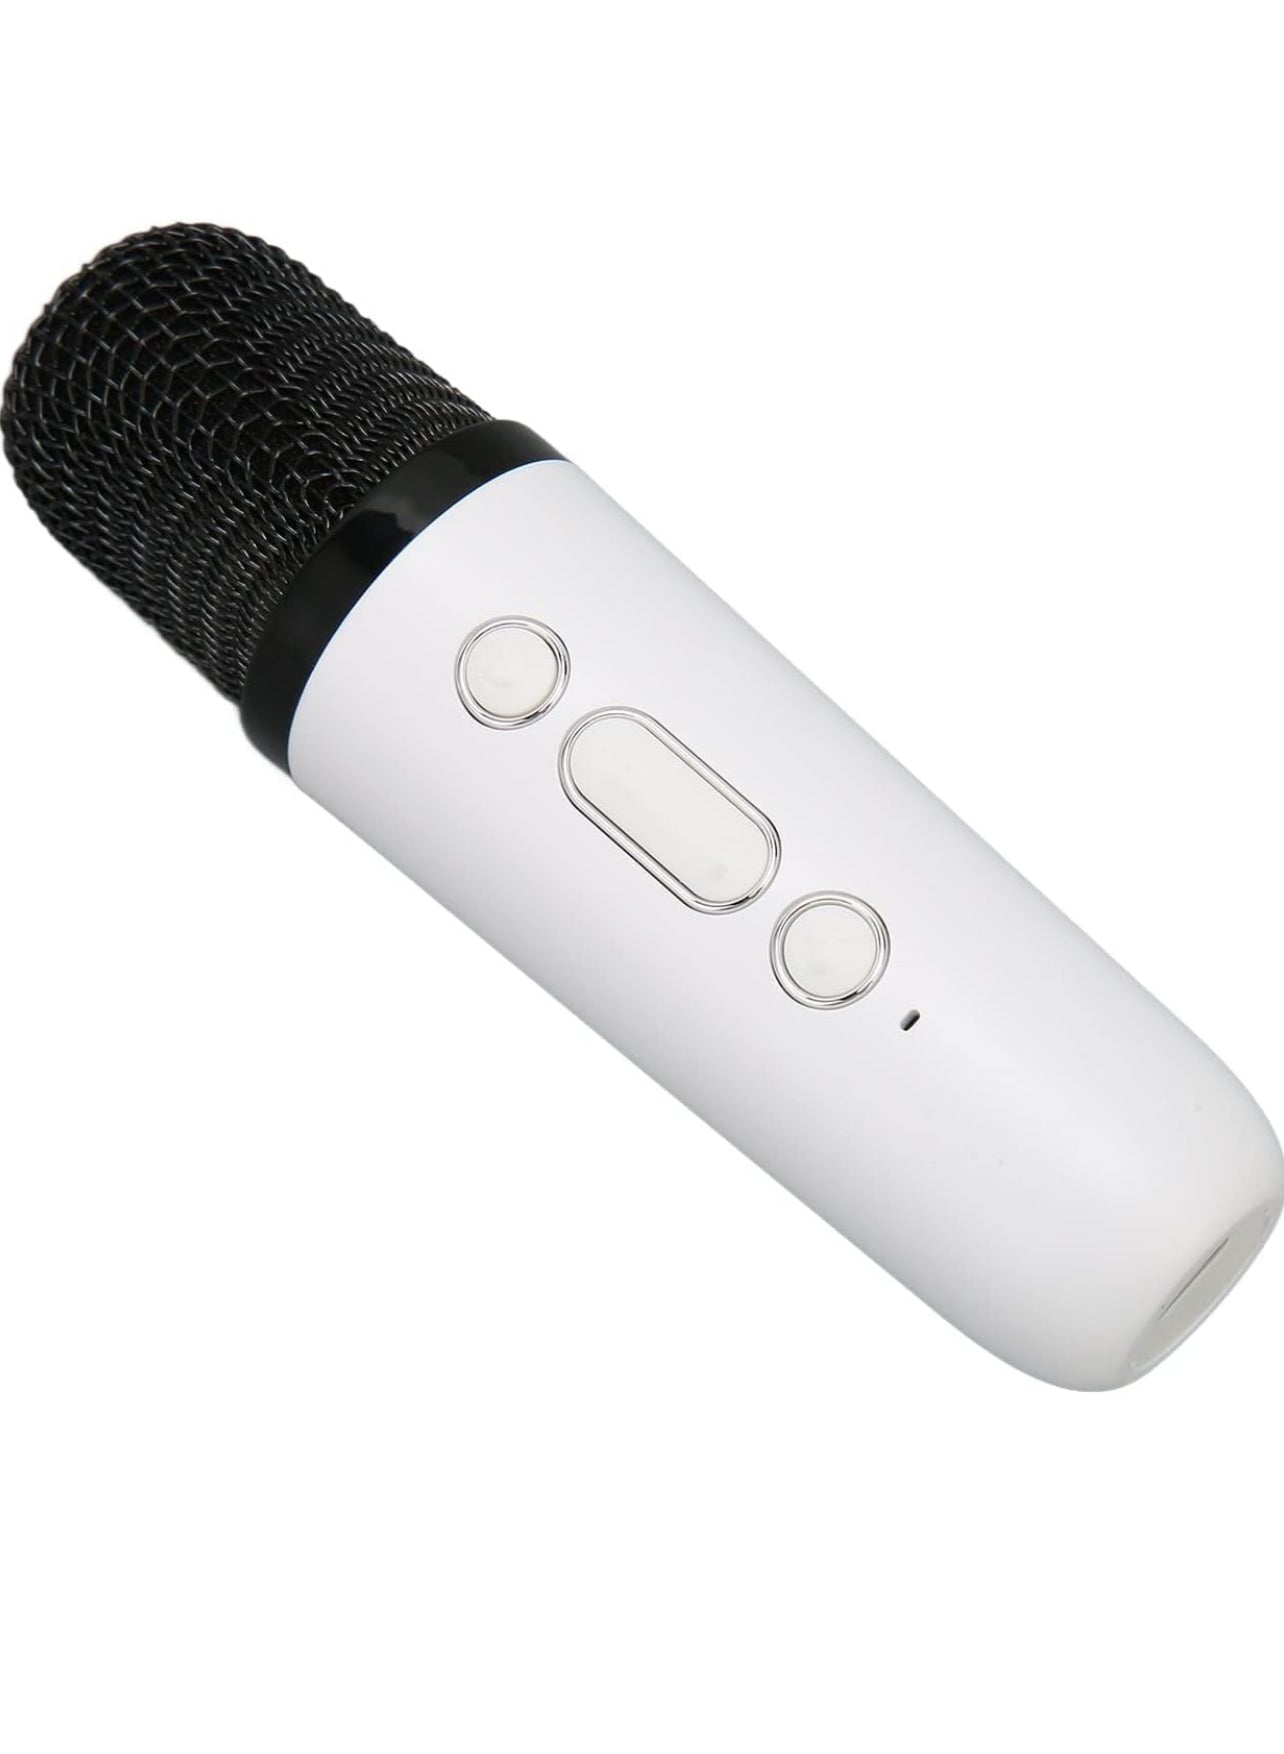 CL1 Mini Speaker with mic karaoke